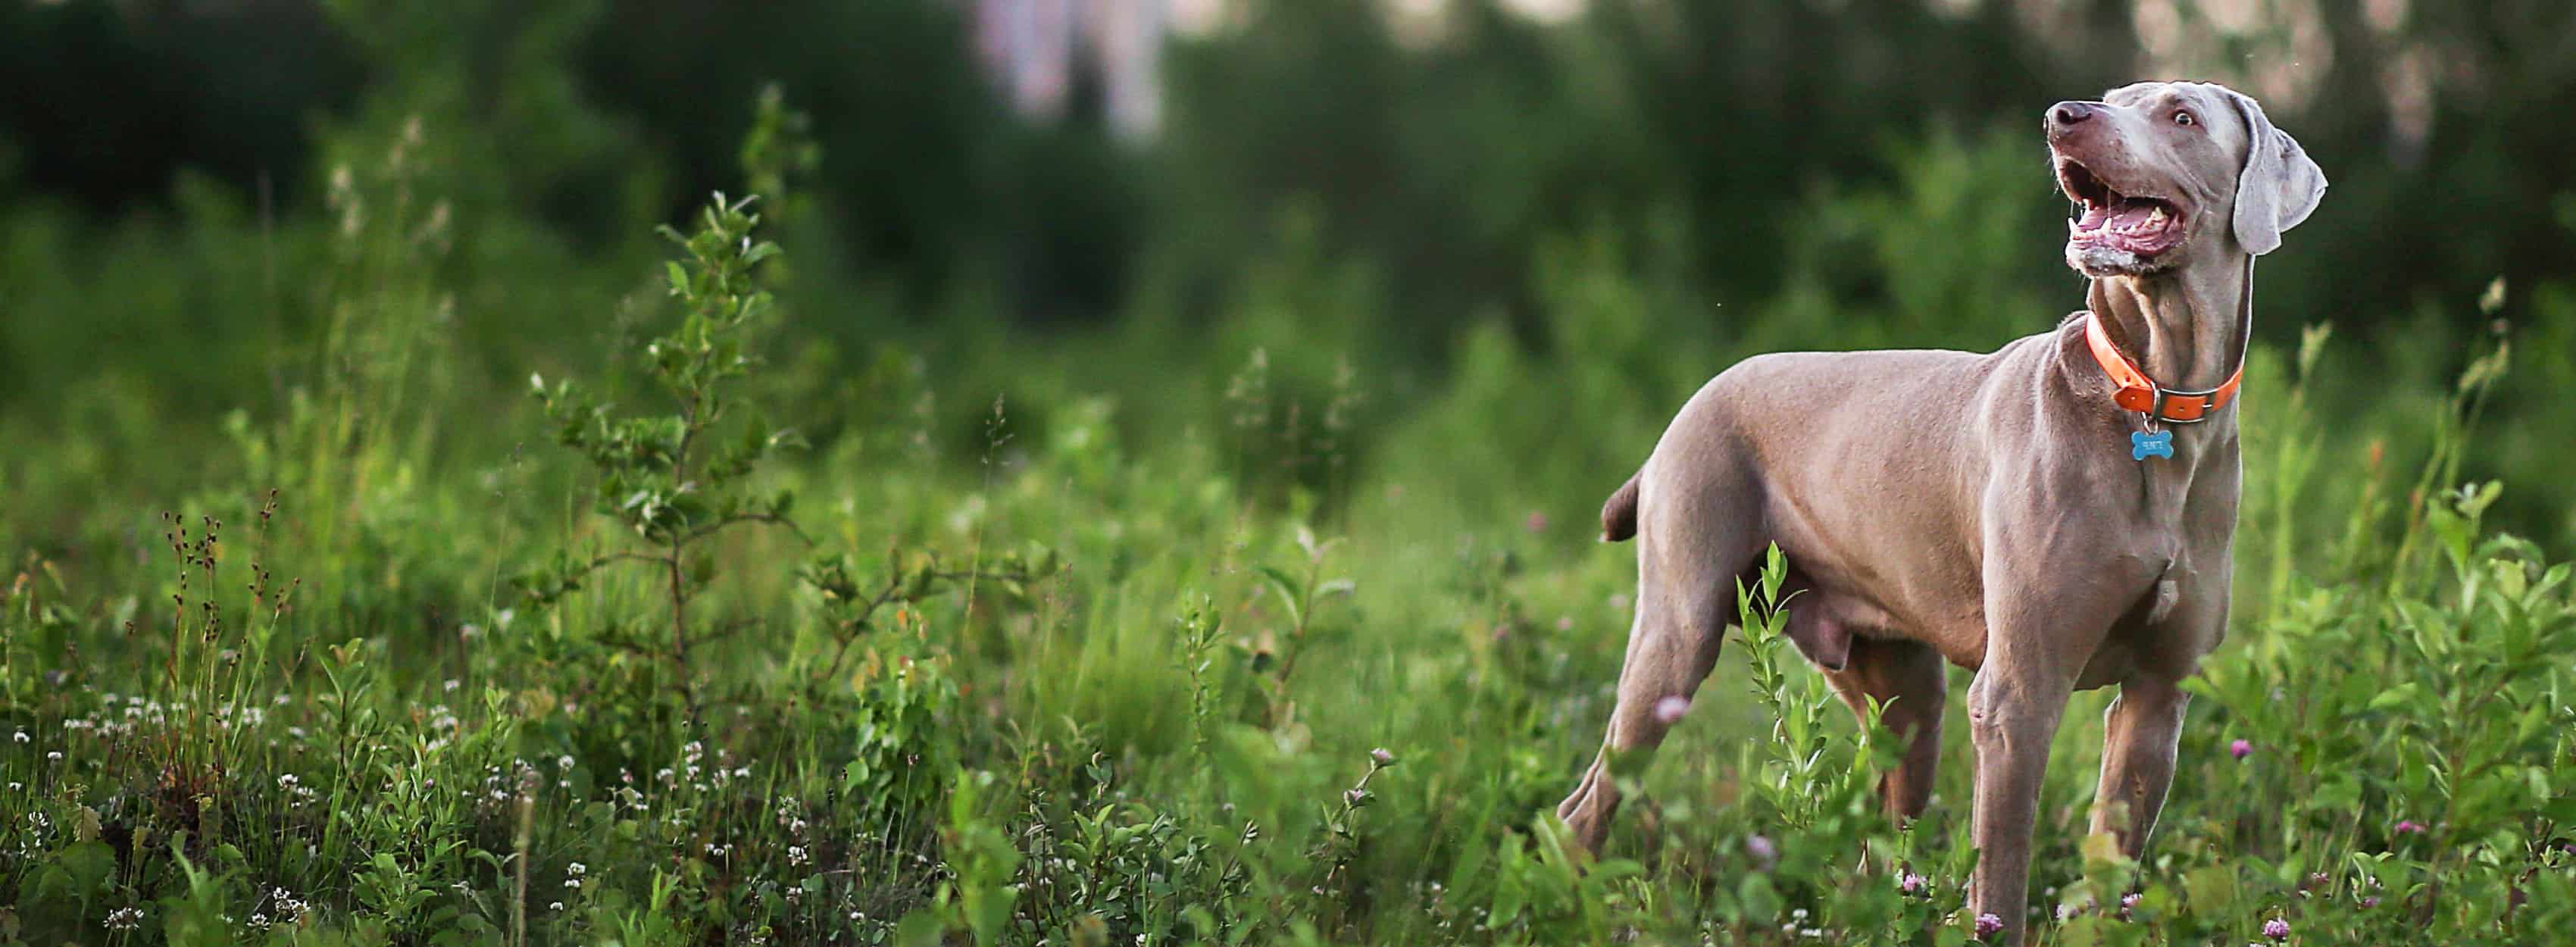 Un cane grigio in un campo che guarda in lontananza.